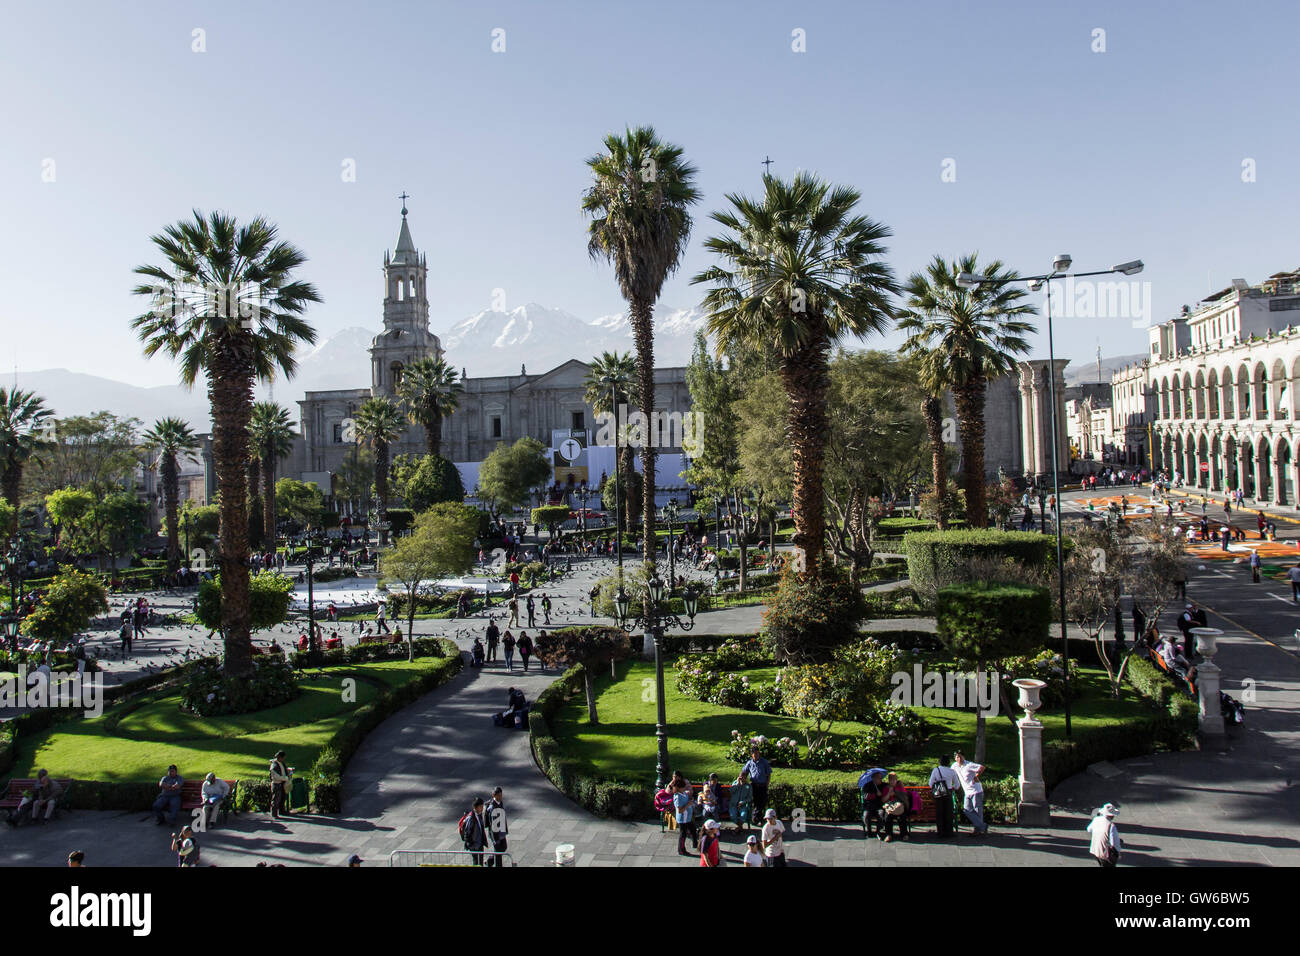 Main square 'Plaza de Armas' in Arequipa, Peru. Stock Photo